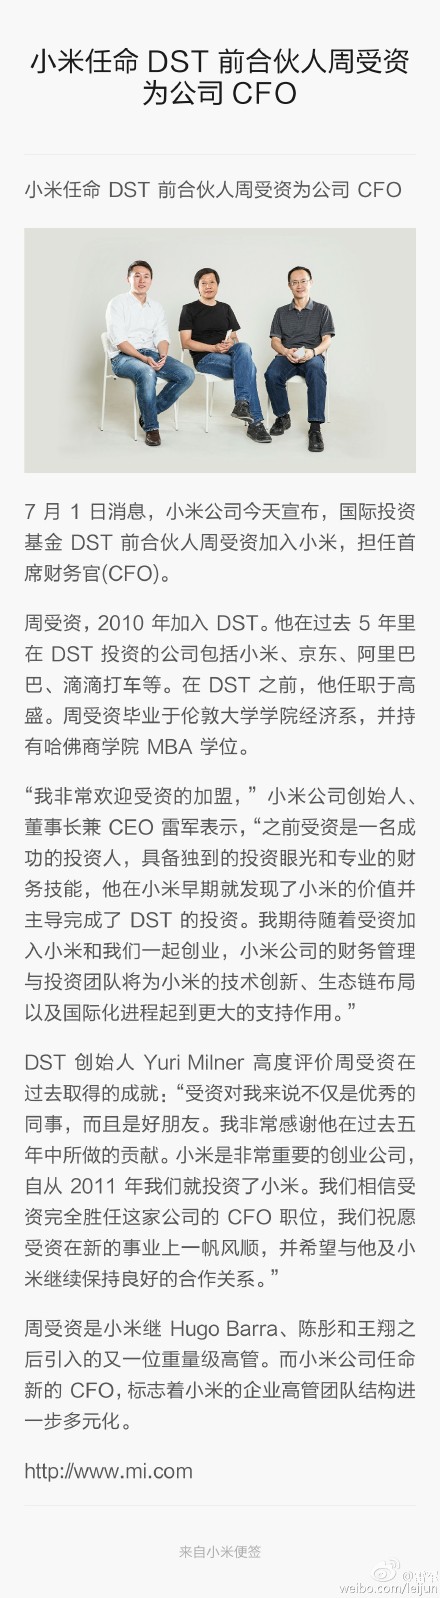 小米任命DST前合伙人周受资担任CFO